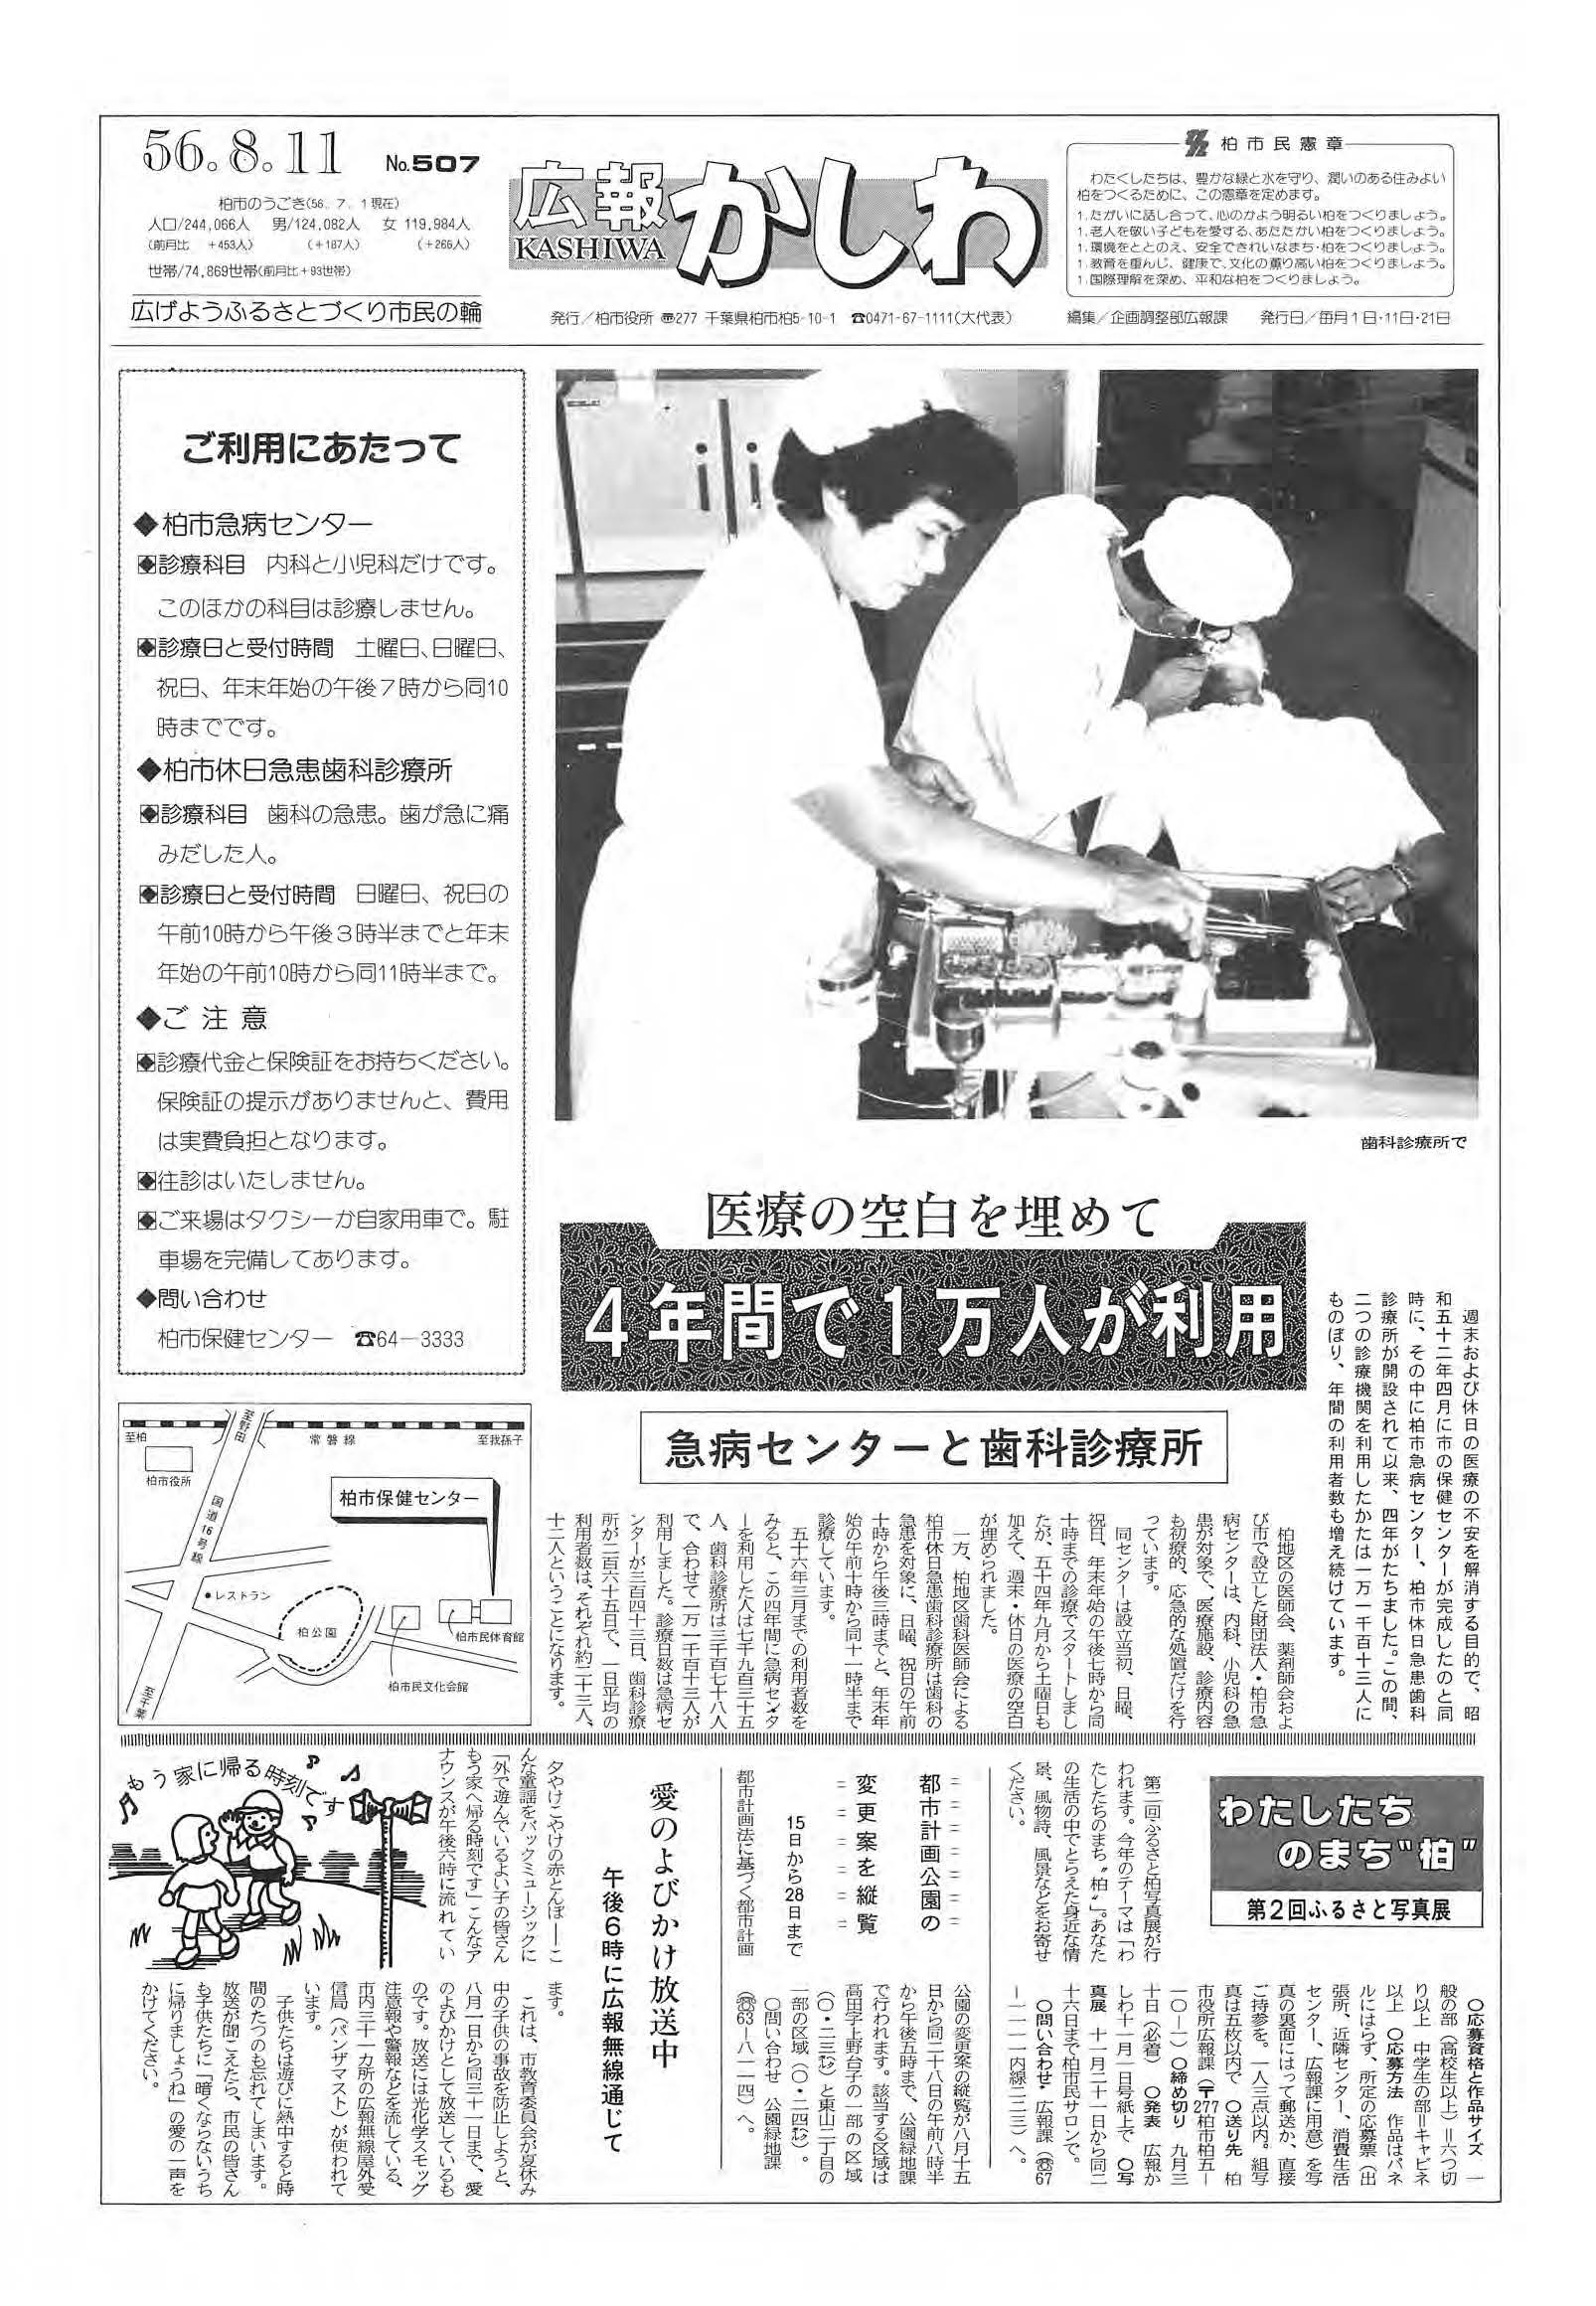 広報かしわ　昭和56年8月11日発行　507号